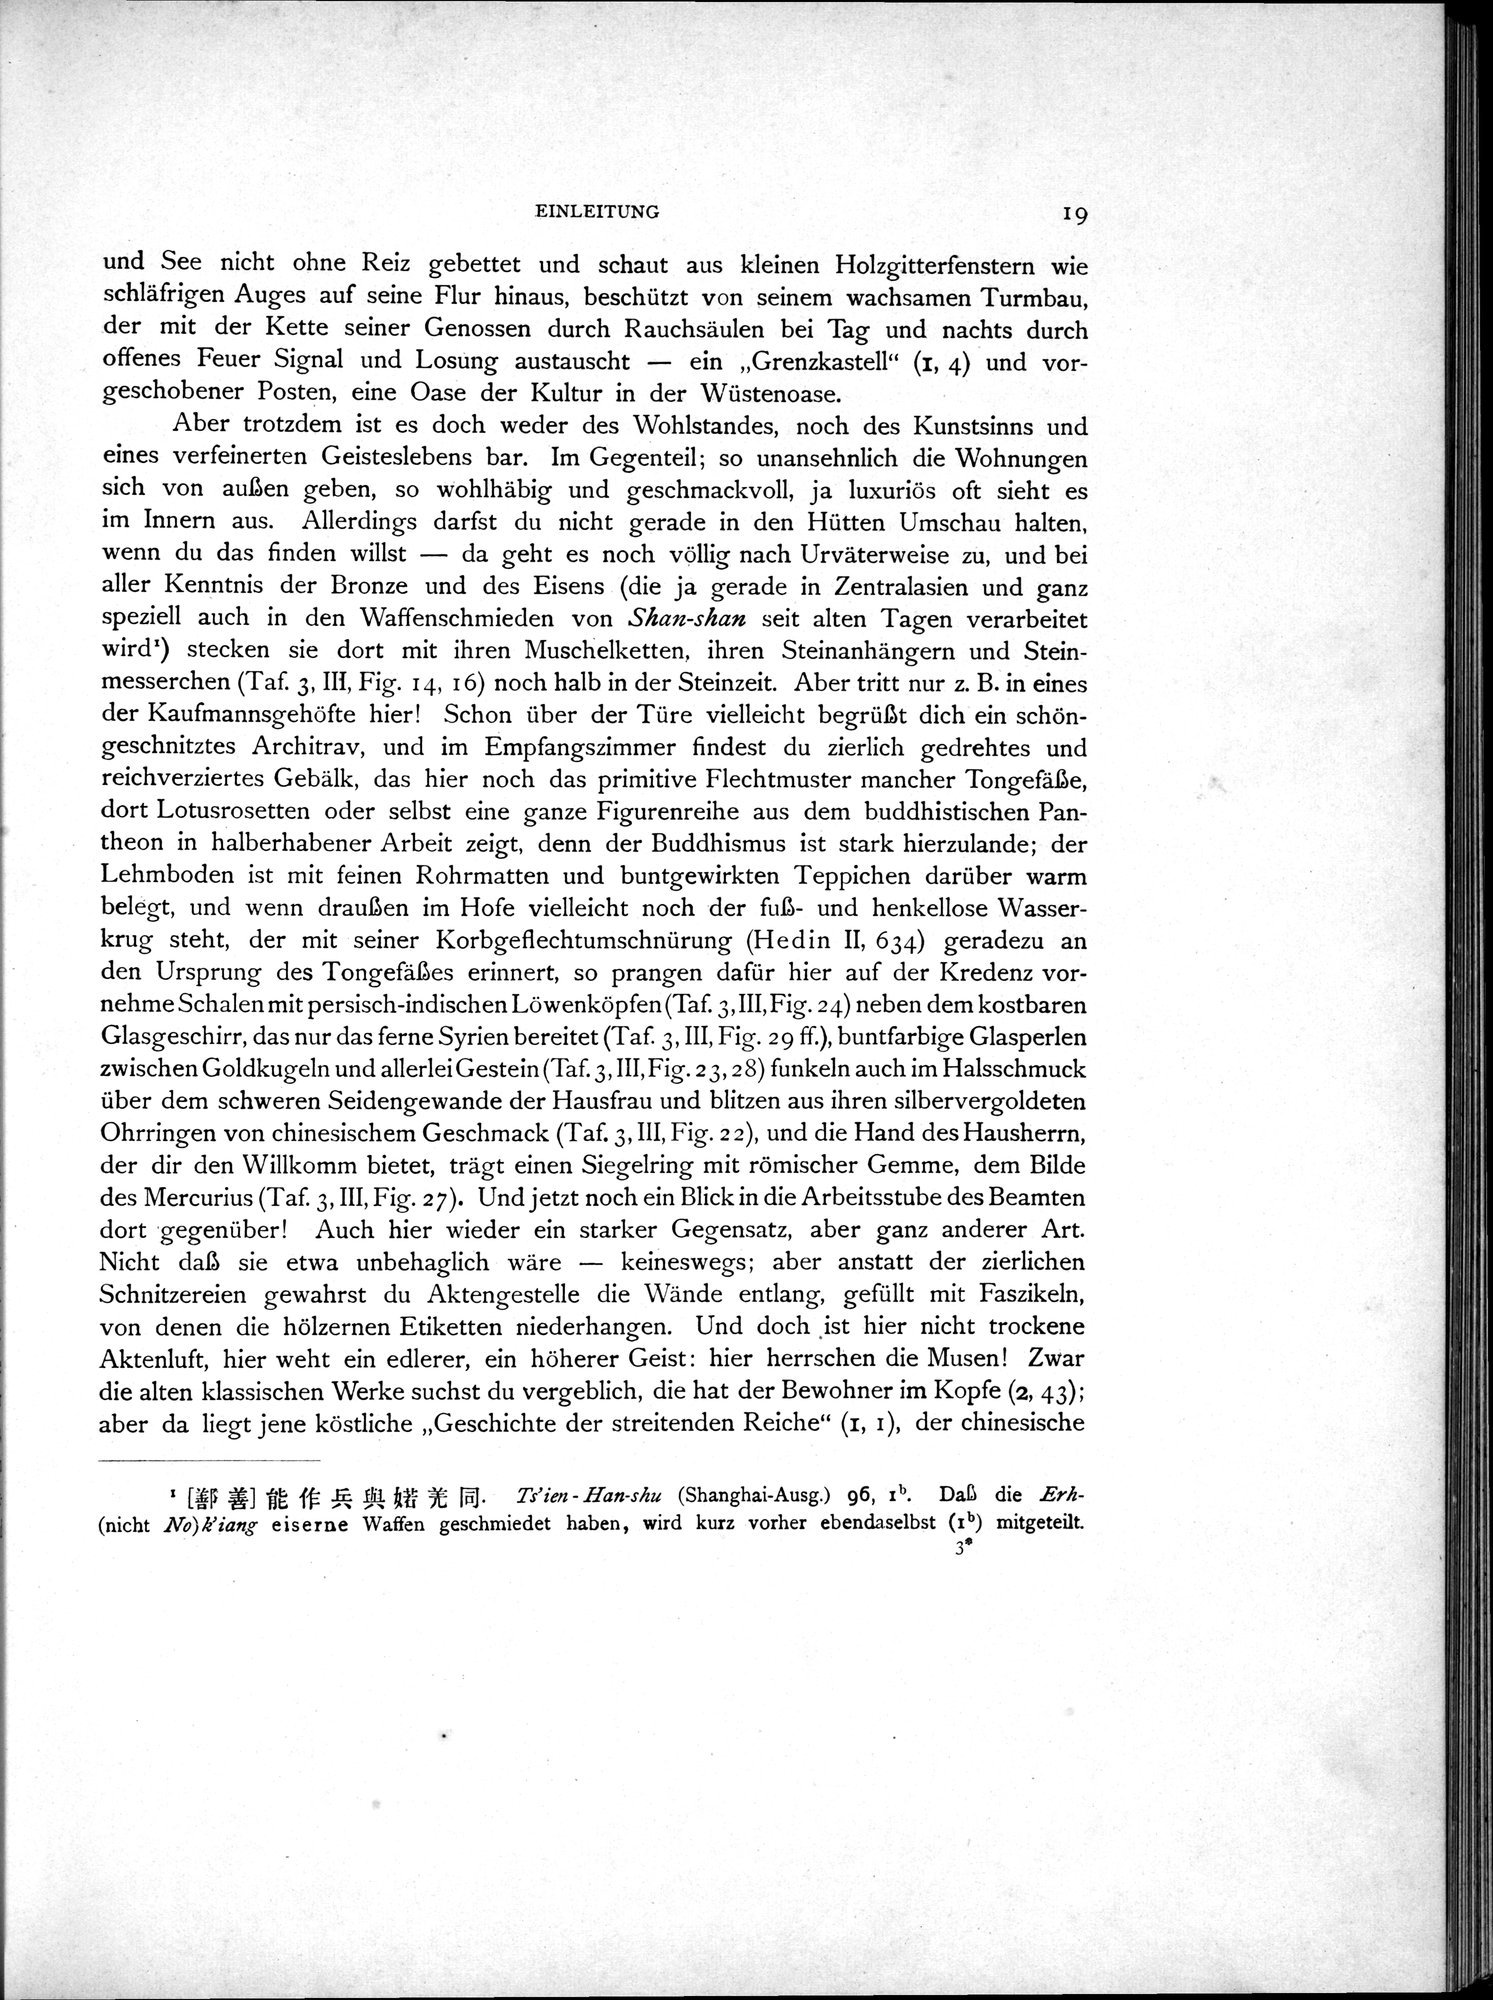 Die Chinesischen Handschriften- und sonstigen Kleinfunde Sven Hedins in Lou-lan : vol.1 / Page 43 (Grayscale High Resolution Image)